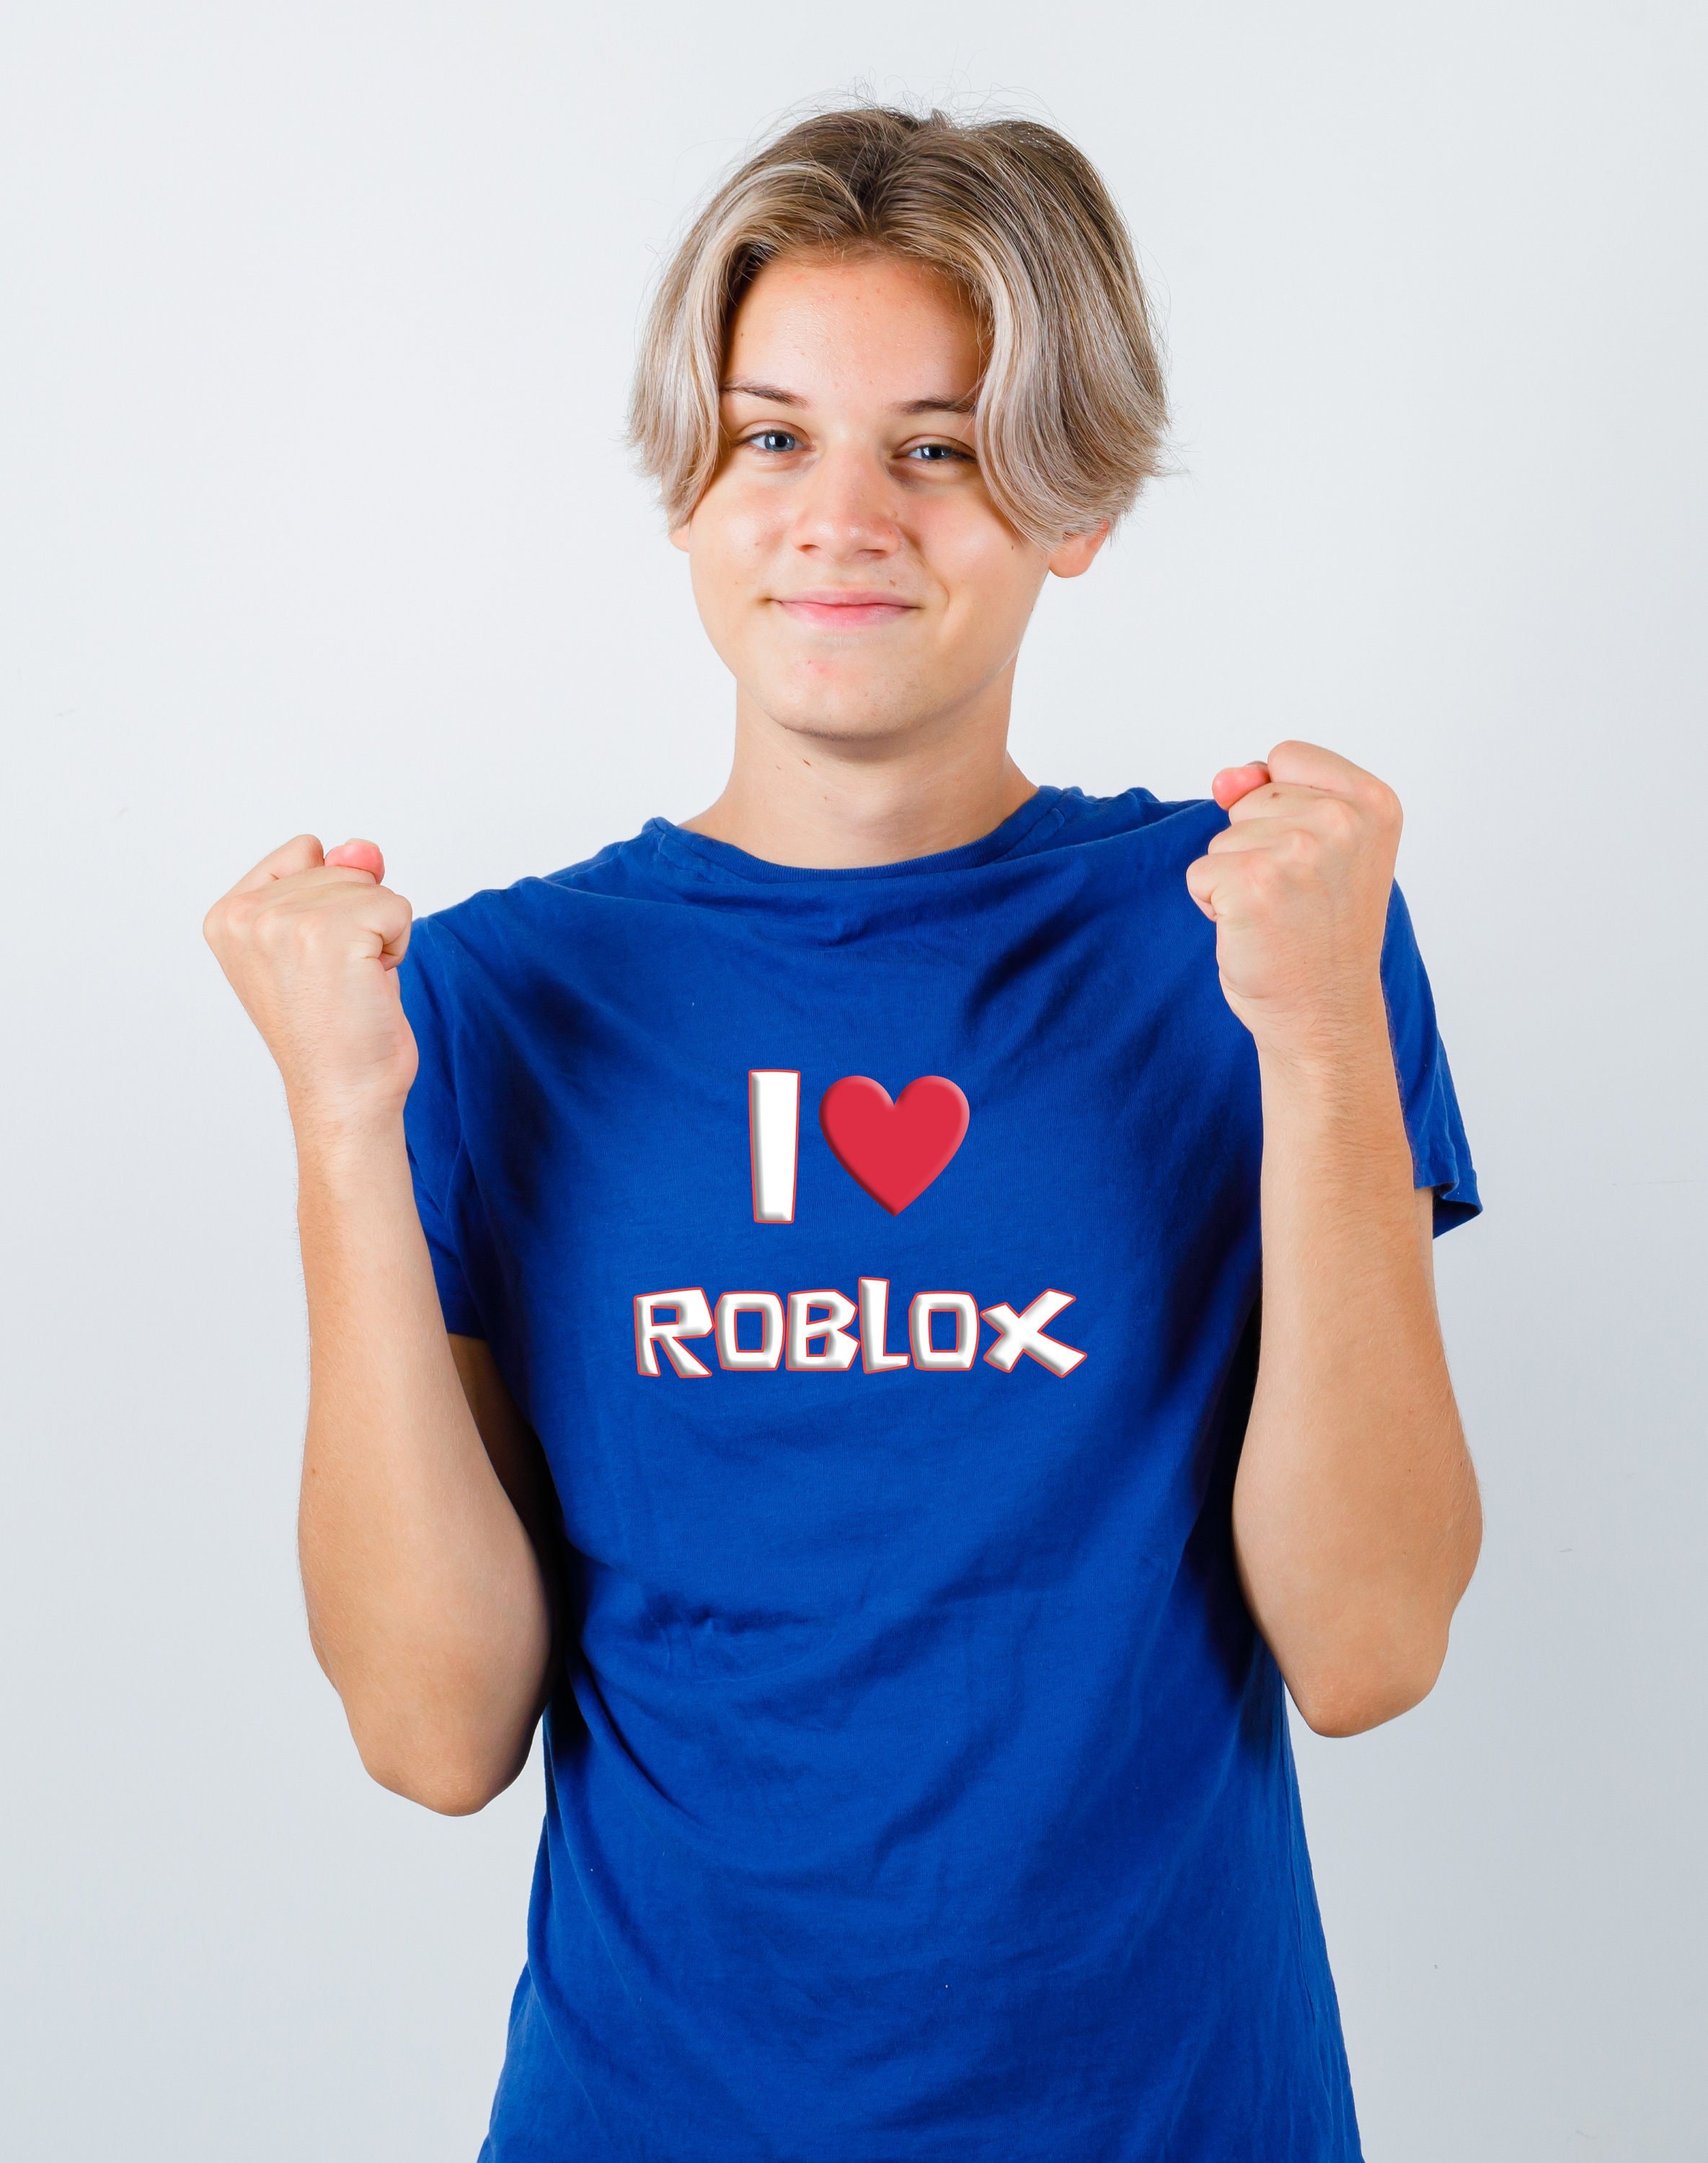 Pin Em Camisetas De Roblox  Cute tshirt designs, Roblox t shirts, Hoodie  roblox